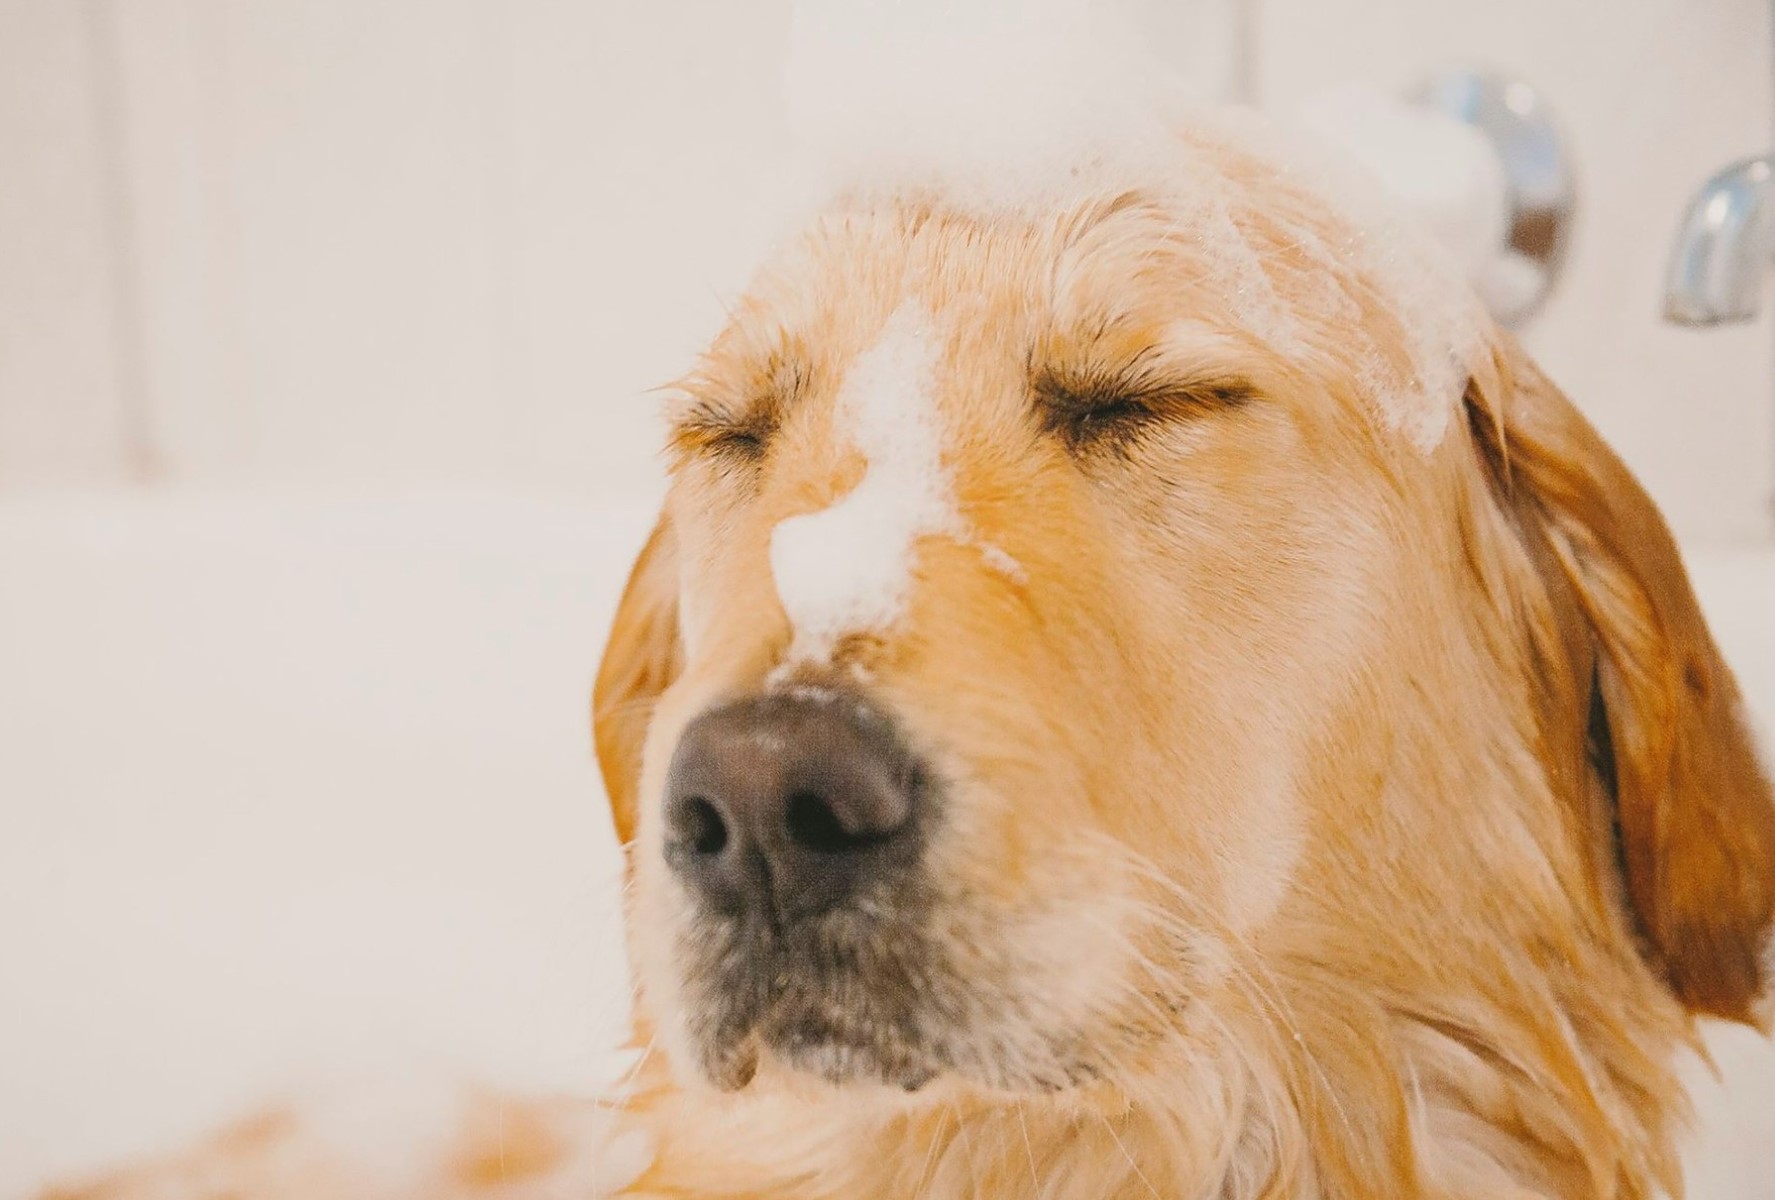 Watch As Fleas Meet Their Watery Demise In A Dog’s Luxurious Bath!